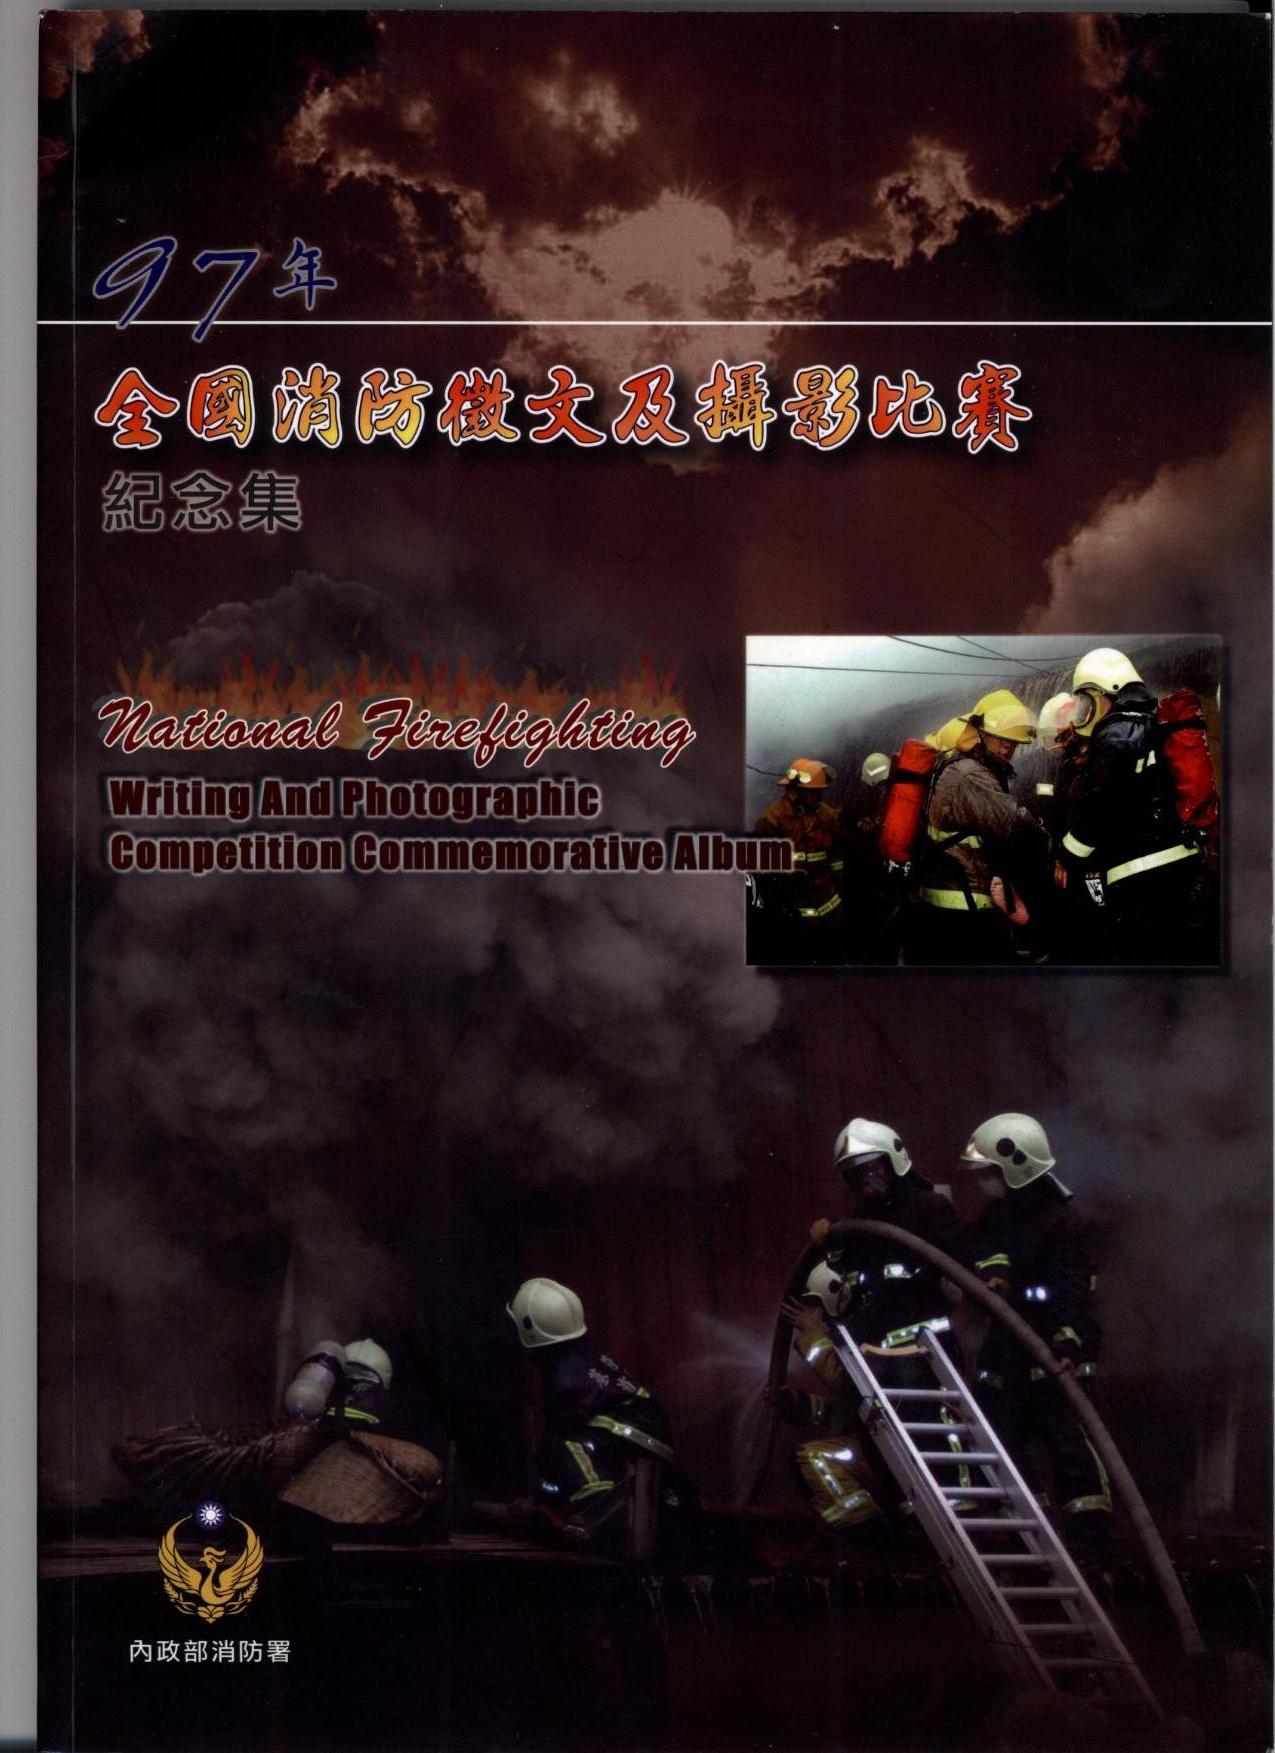 97年全國消防徵文及攝影比賽紀念集